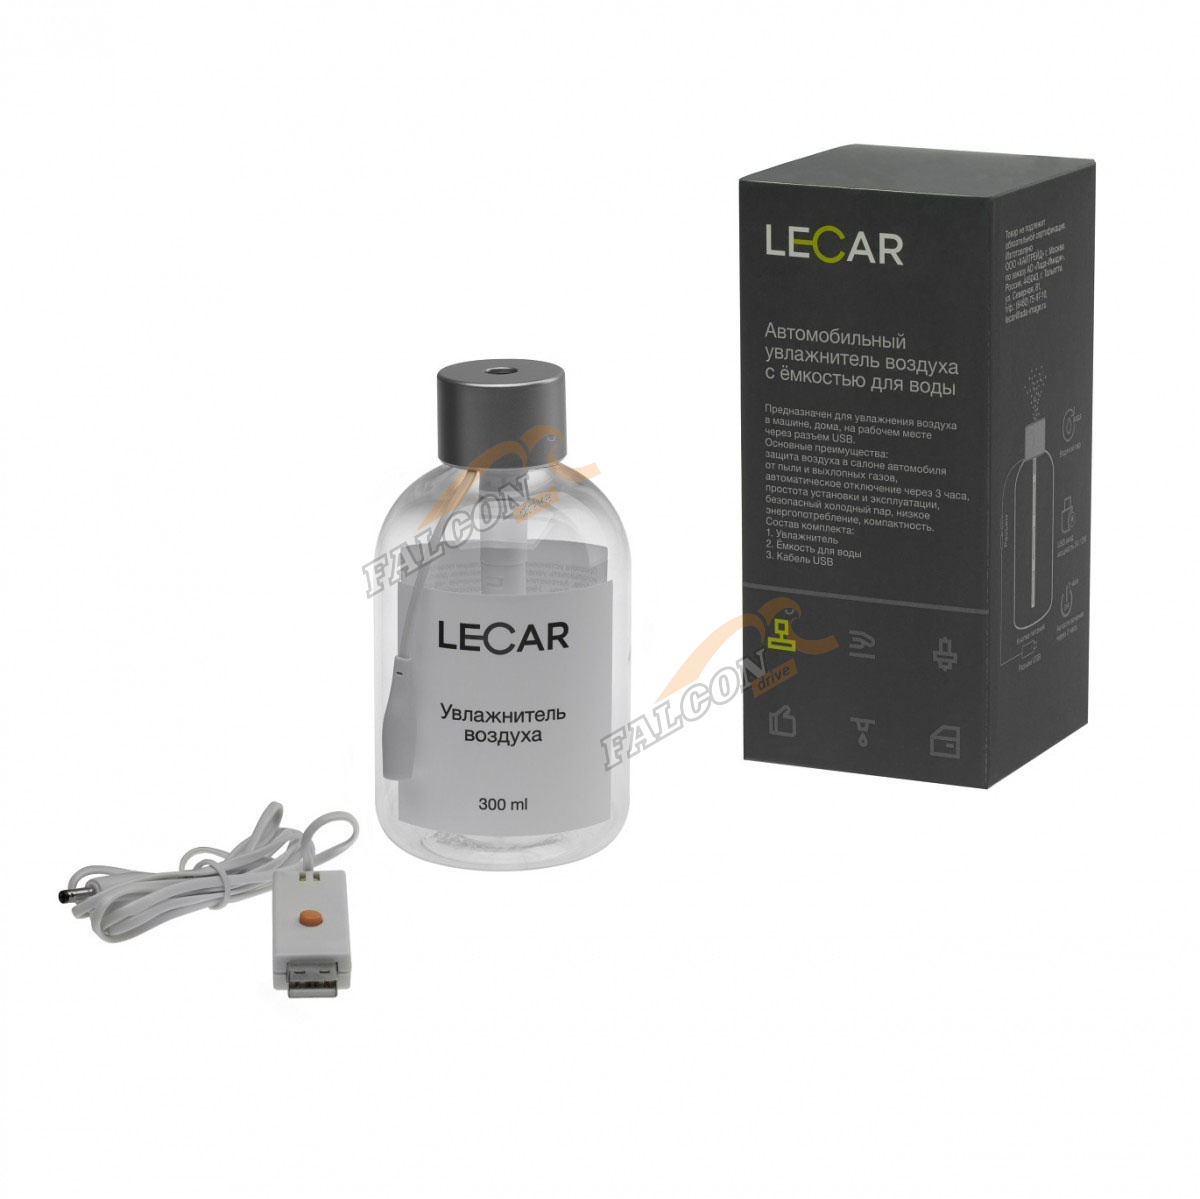 Увлажнитель воздуха (LECAR) с емкостью для воды